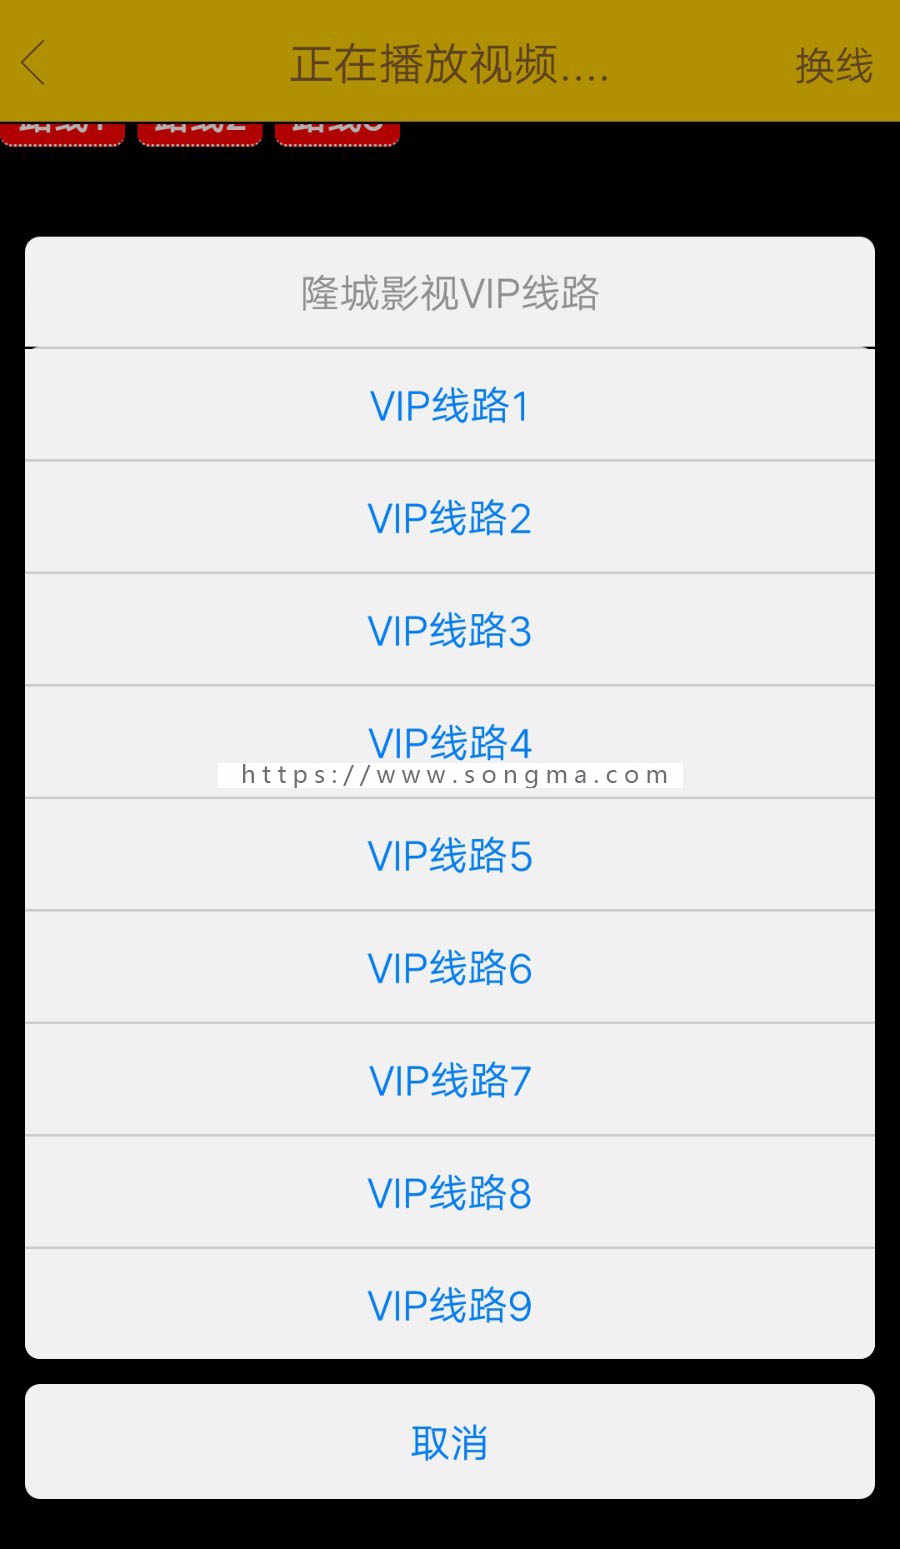 独家修复在线视频聚合VIP新版影视APP源码安卓/IOS苹果双端影视app V1版